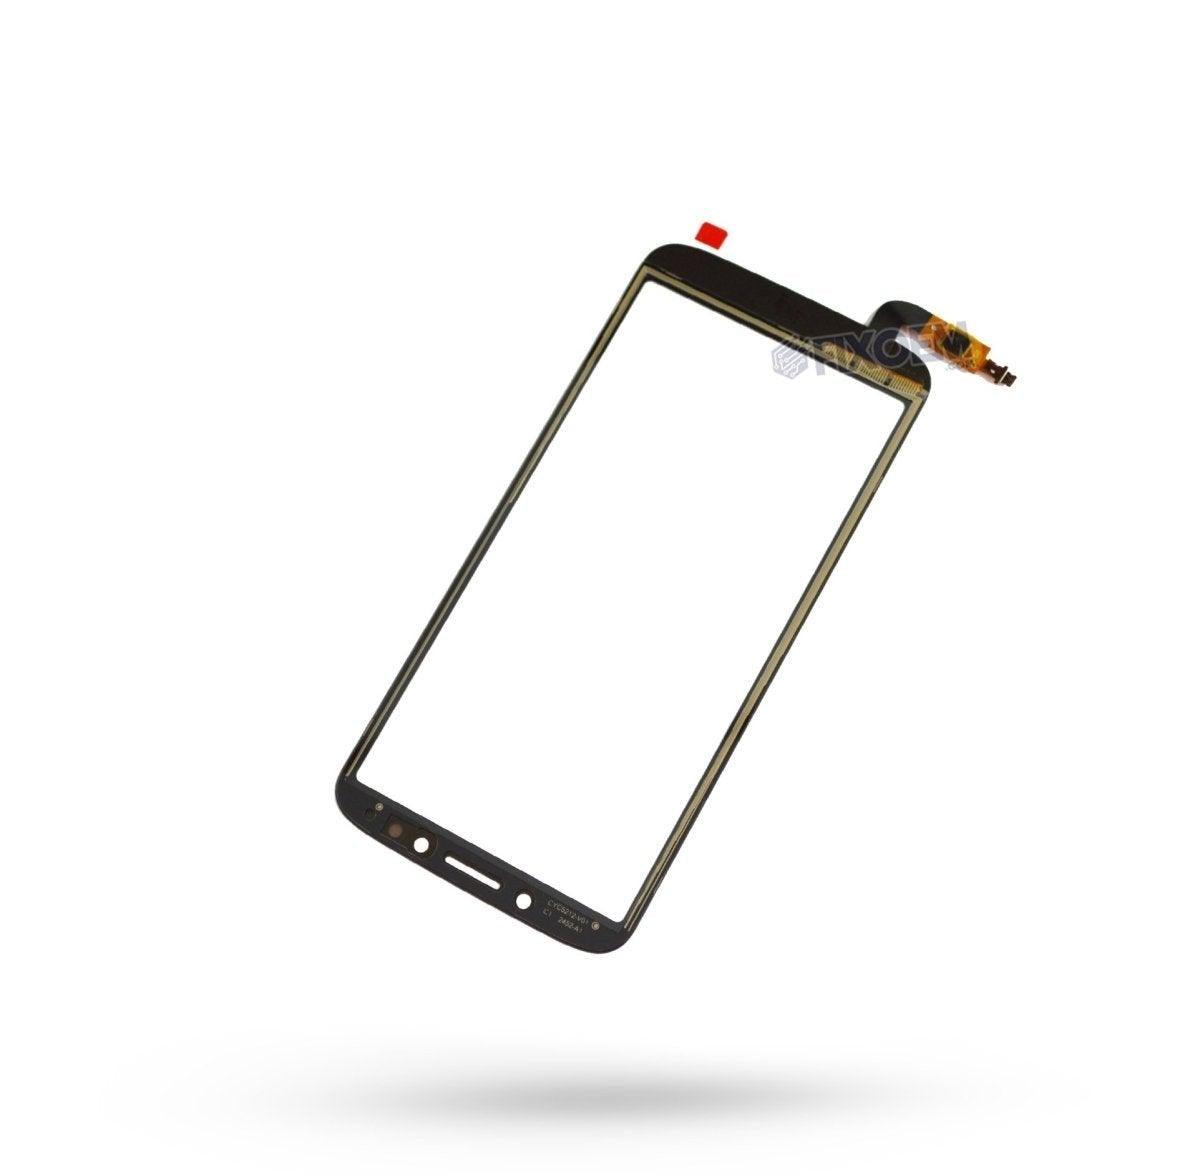 Touch Moto E5 Play Go Negro XT-1920 a solo $ 70.00 Refaccion y puestos celulares, refurbish y microelectronica.- FixOEM